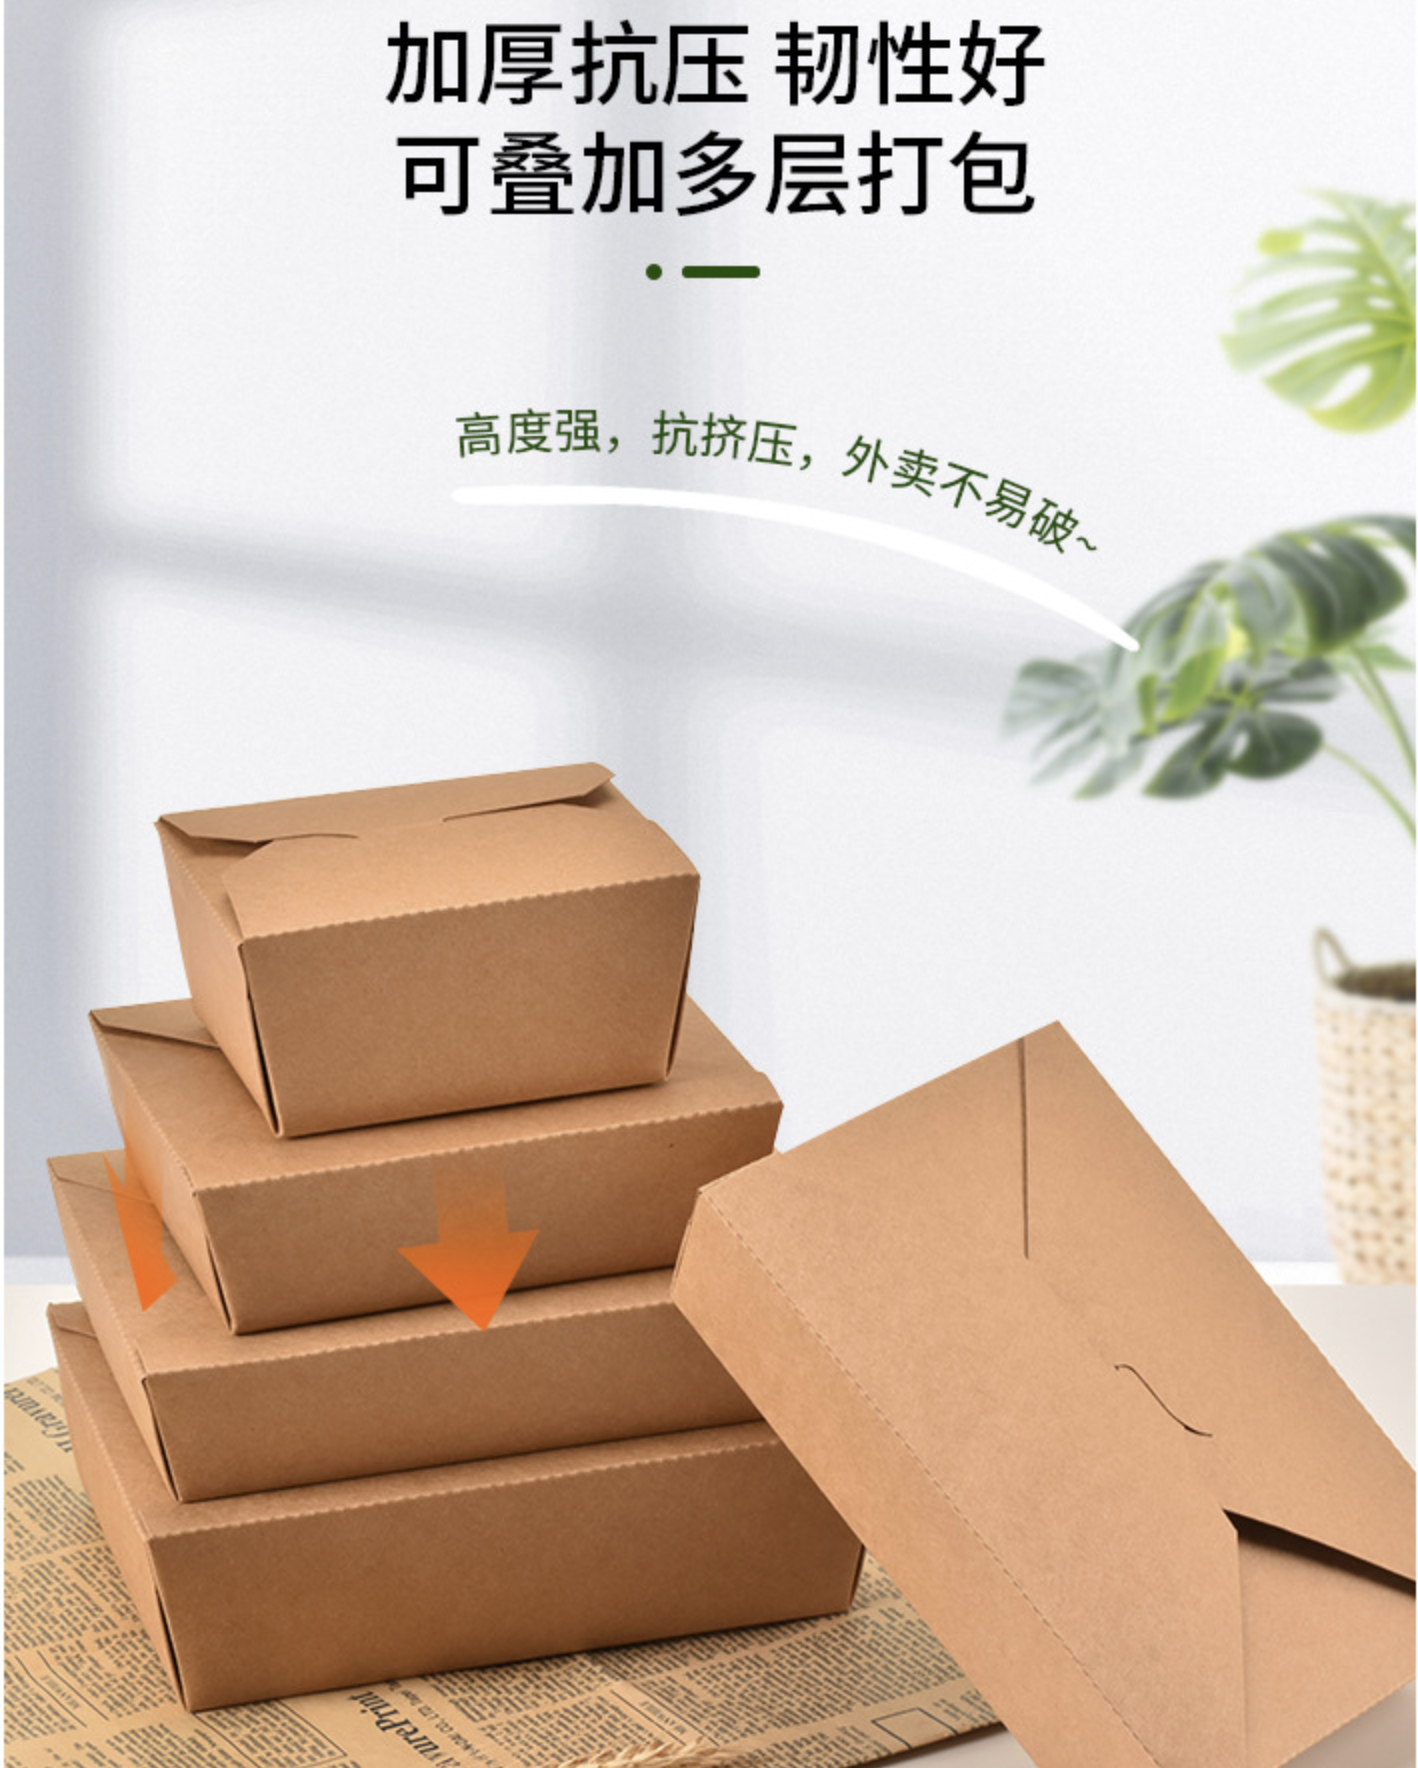 紙製餐盒(图4)